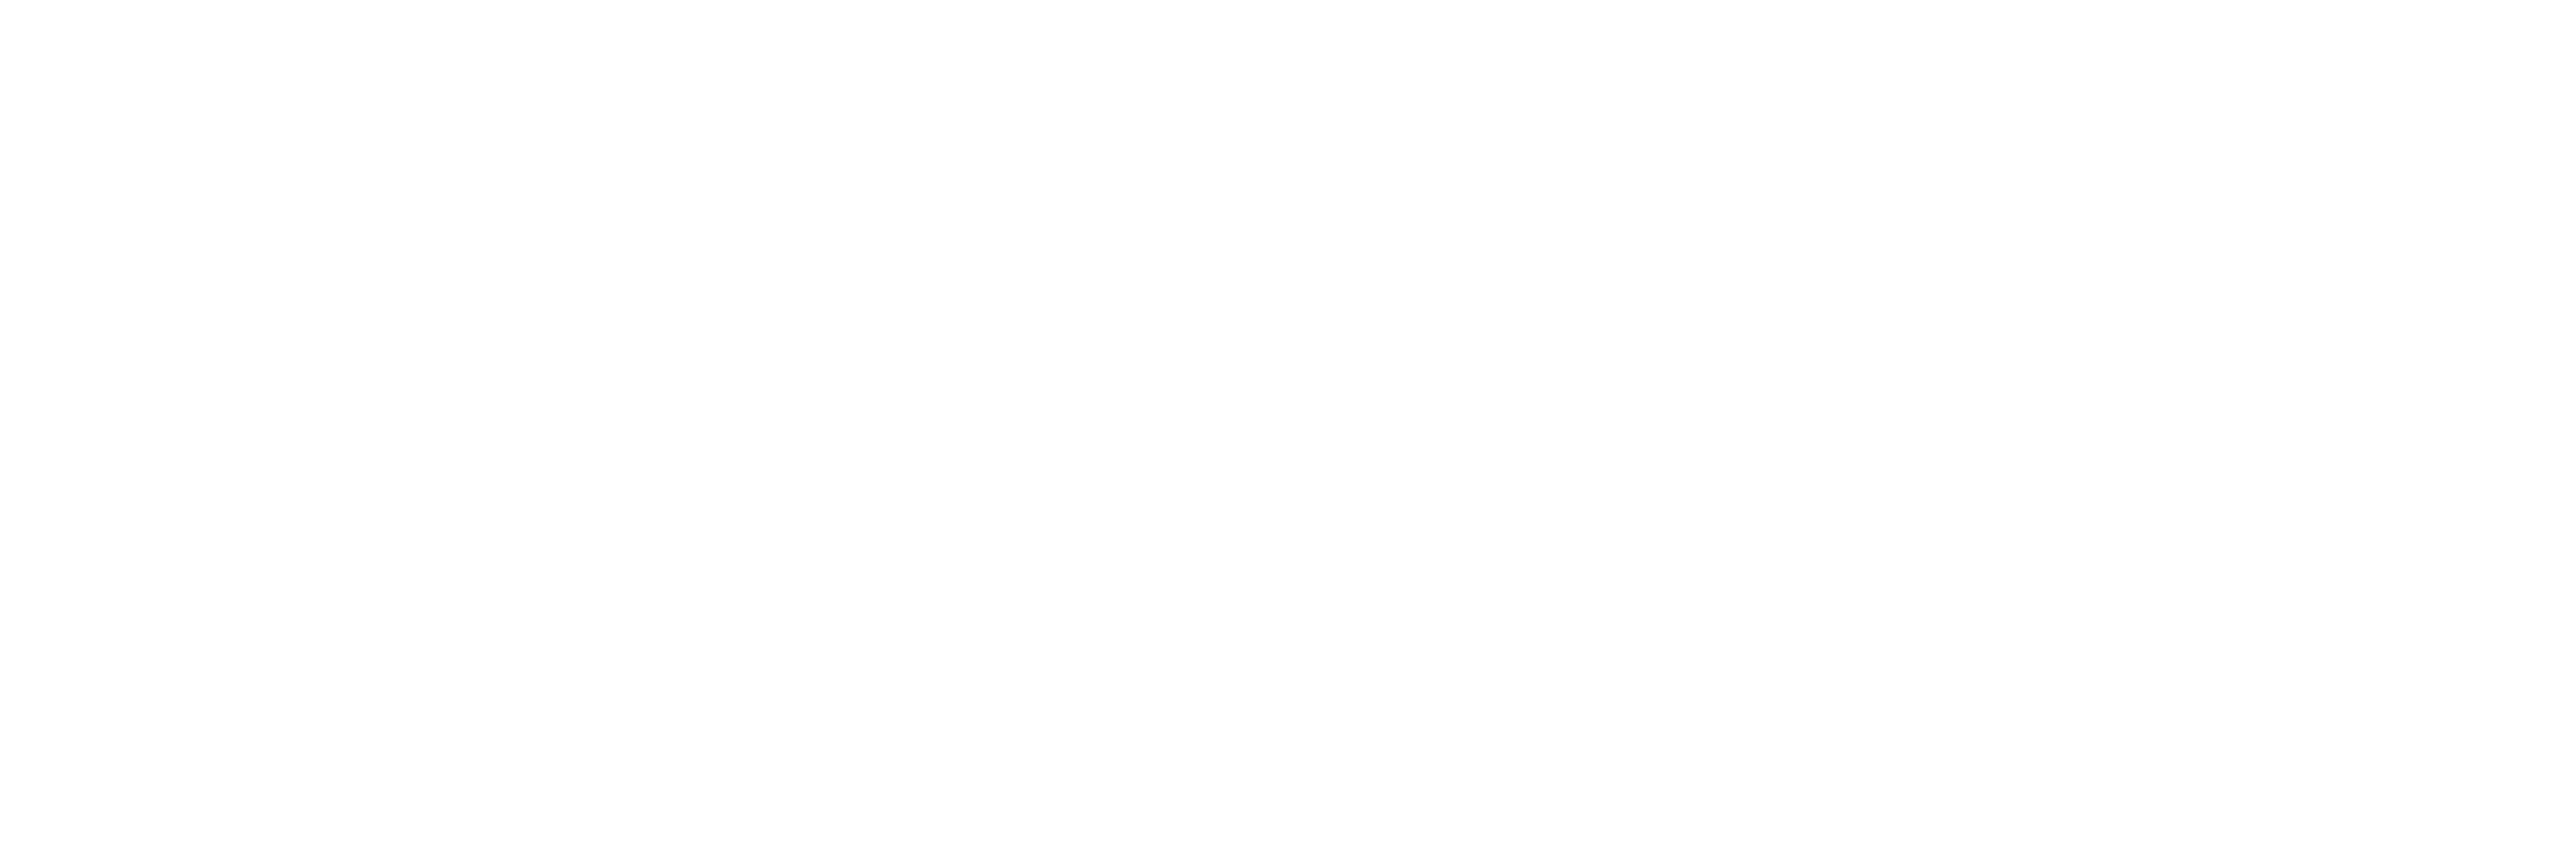 the spark factor logo